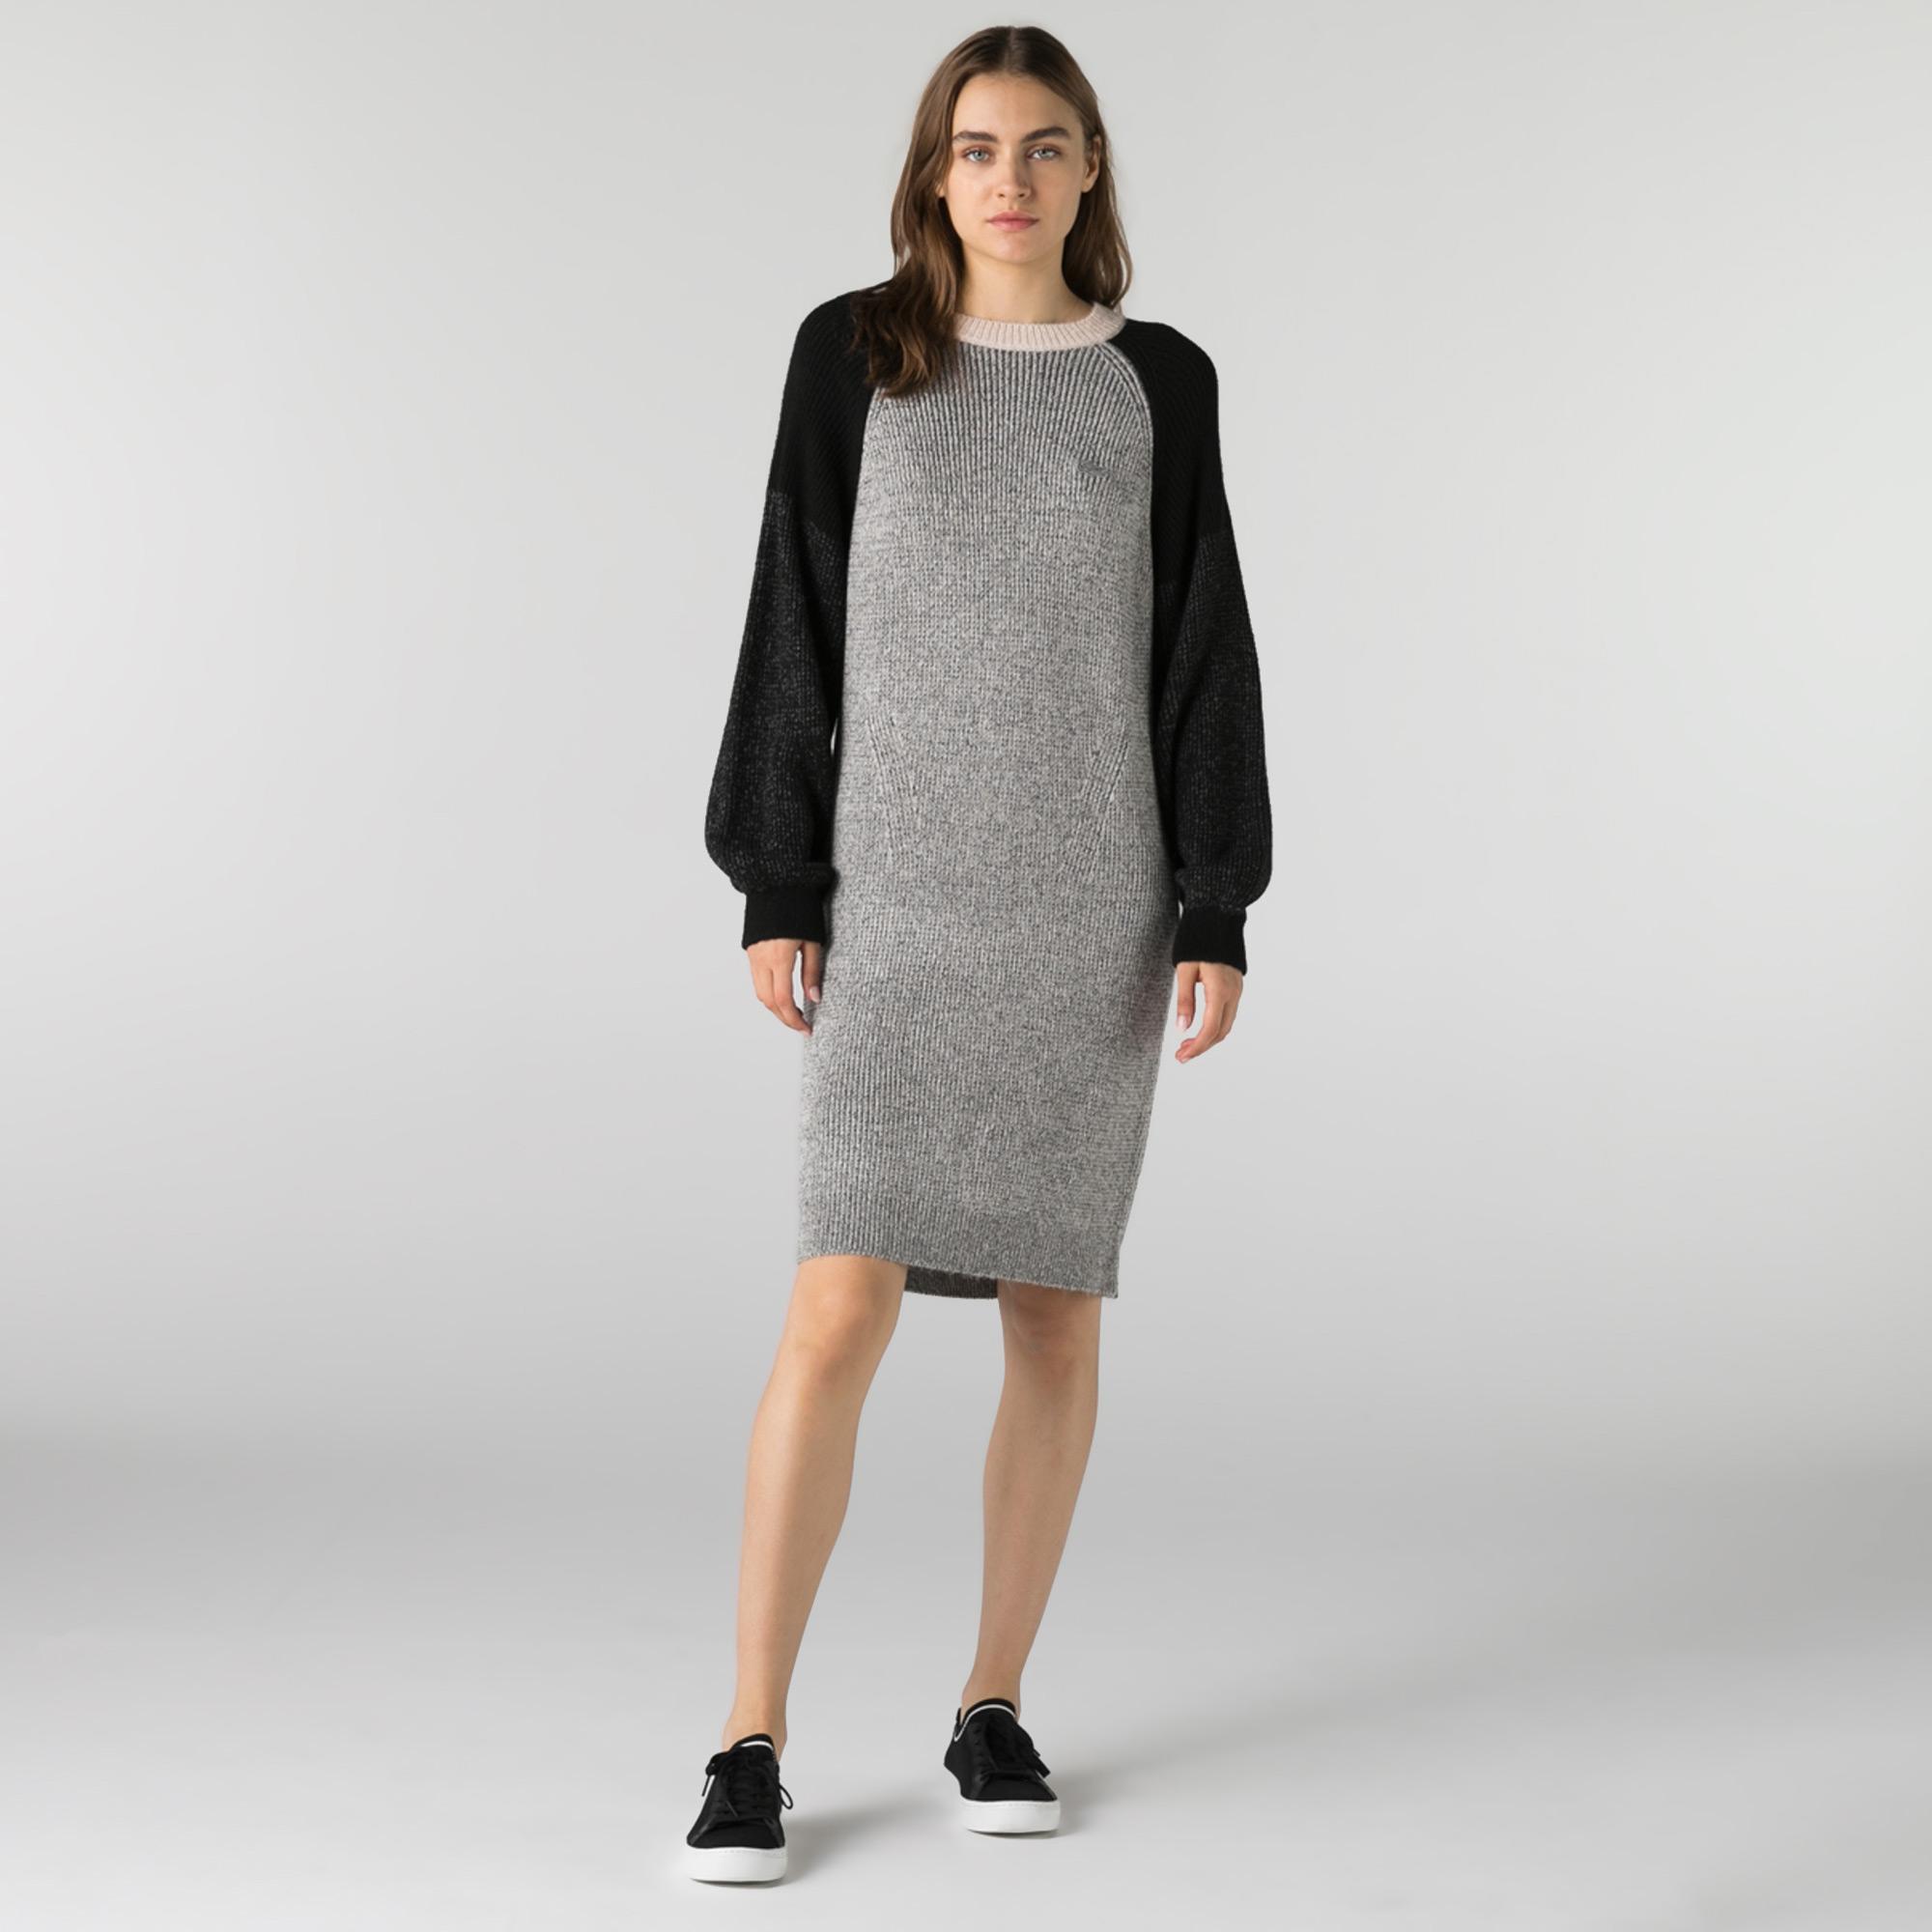 Lacoste Kadın Slim Fit Uzun Kollu Kayık Yaka Renk Bloklu Gri Elbise. 2